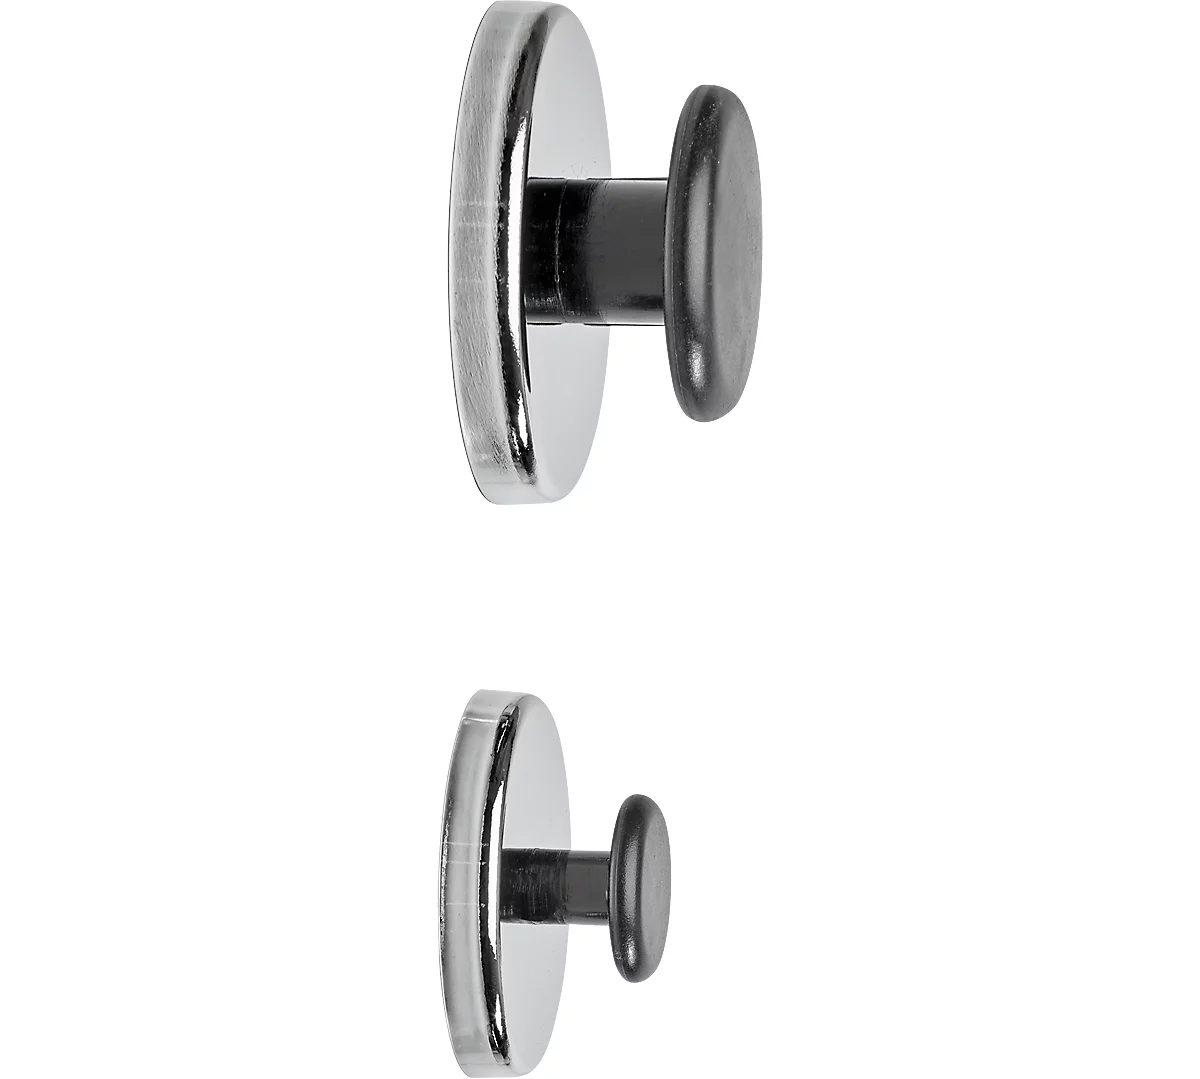 Magnet Maul, rund, mit Griffknopf, Ø 51 x T 24 mm, Haftkraft bis 9 kg, Stahl & Kunststoff, hellsilber, 1 Stück